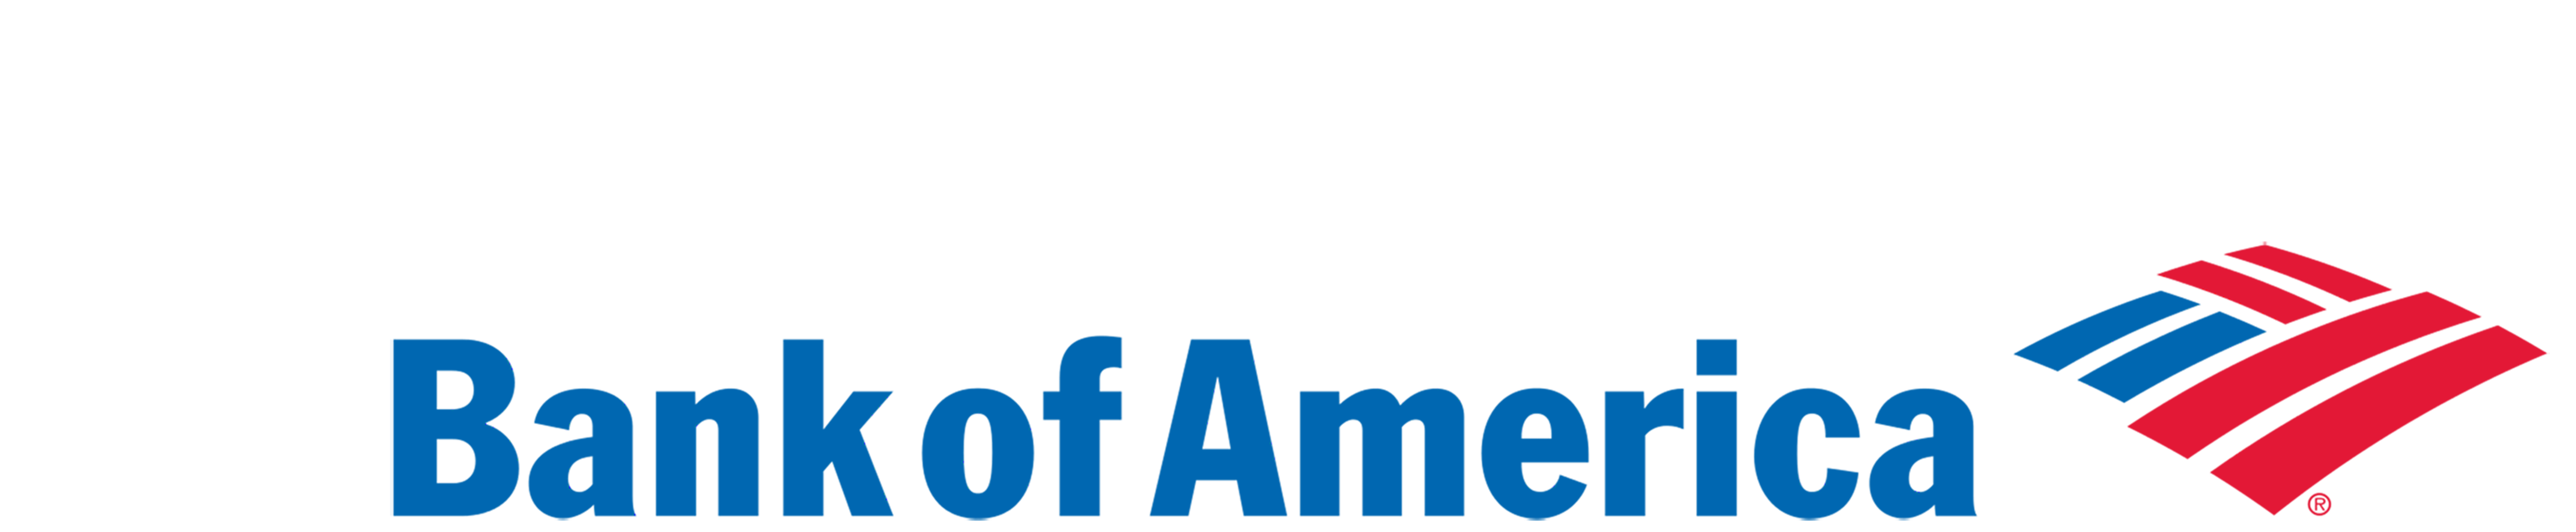 Bank of America Logo - Bank Of America Png Logo - Free Transparent PNG Logos